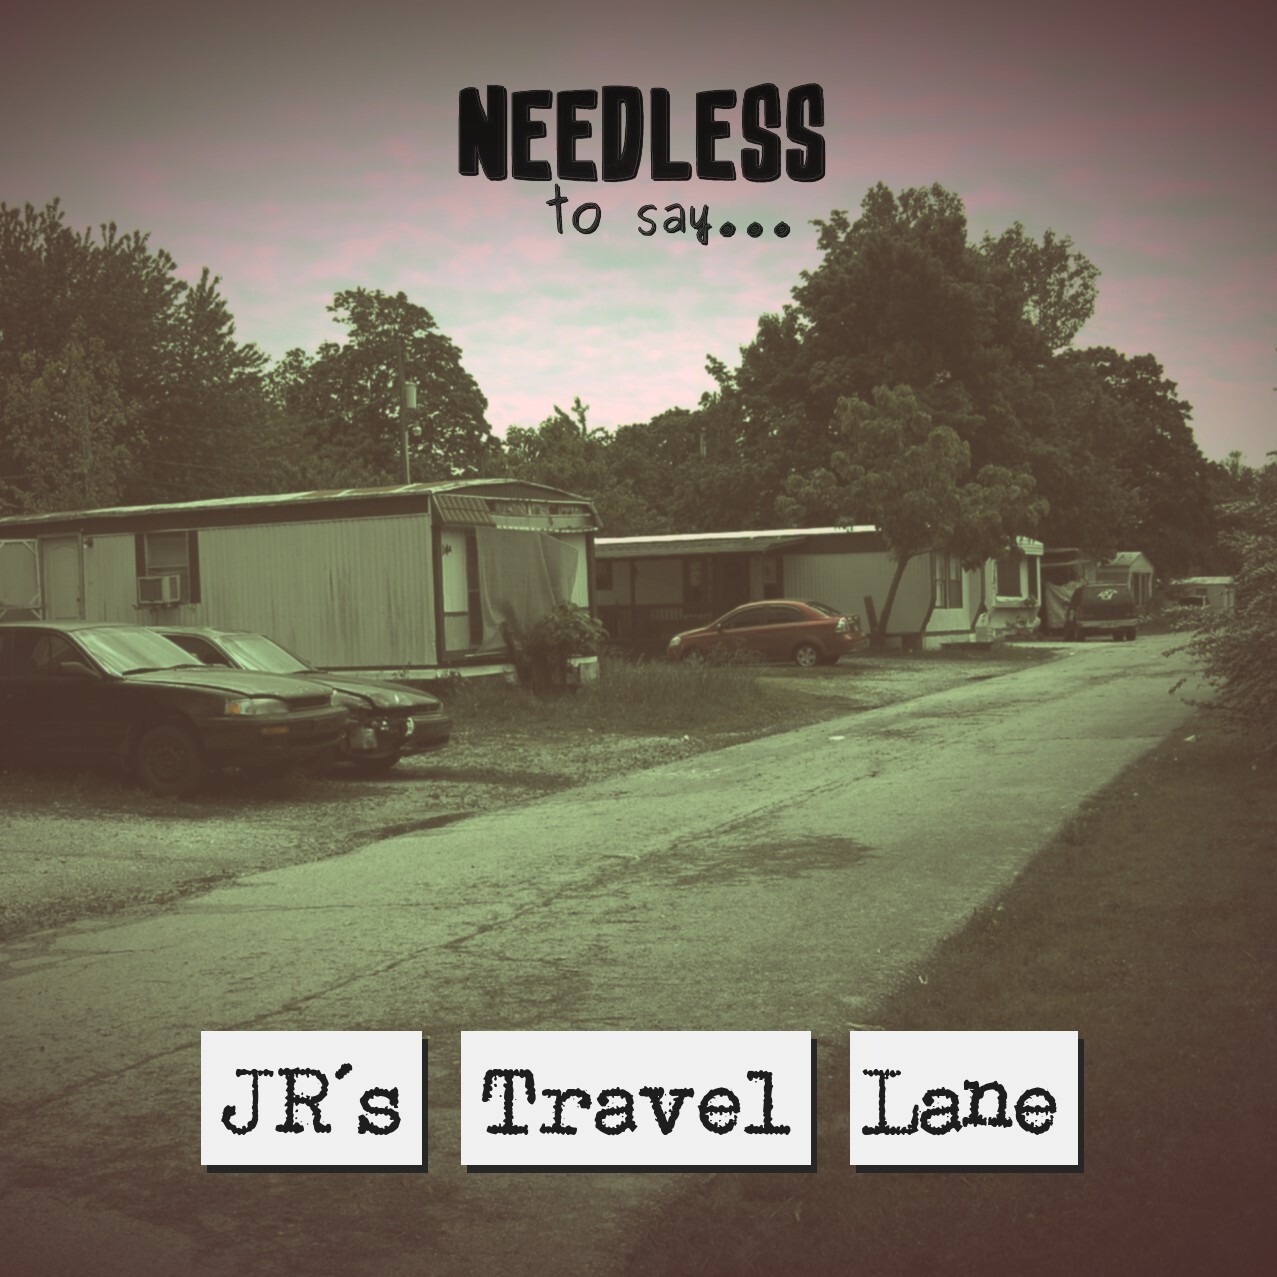 JR’s Travel Lane Image